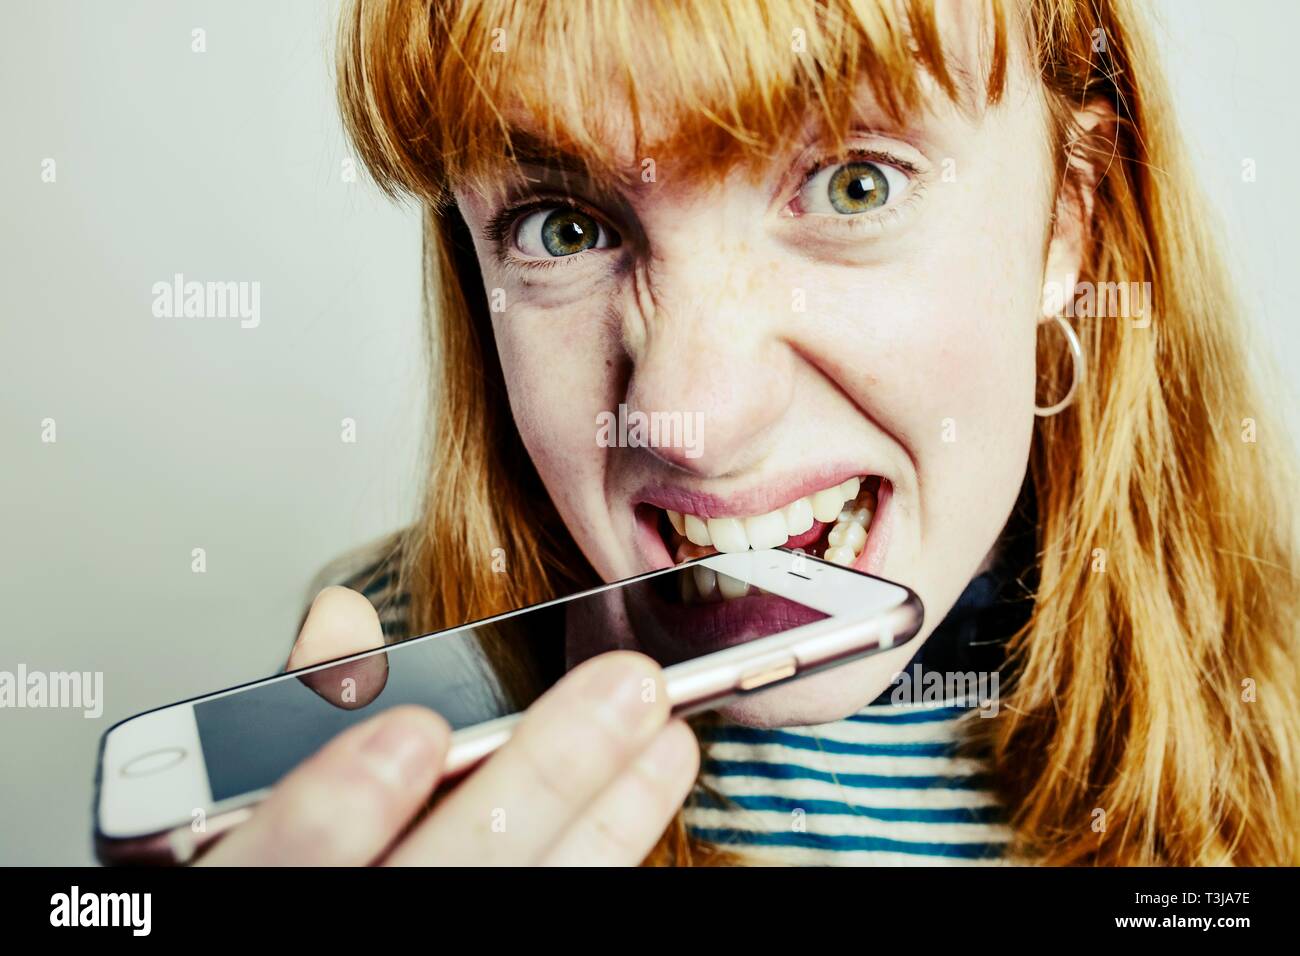 Adolescent, fille, rousse, mordre dans son smartphone en désespoir de cause, studio shot, Allemagne Banque D'Images